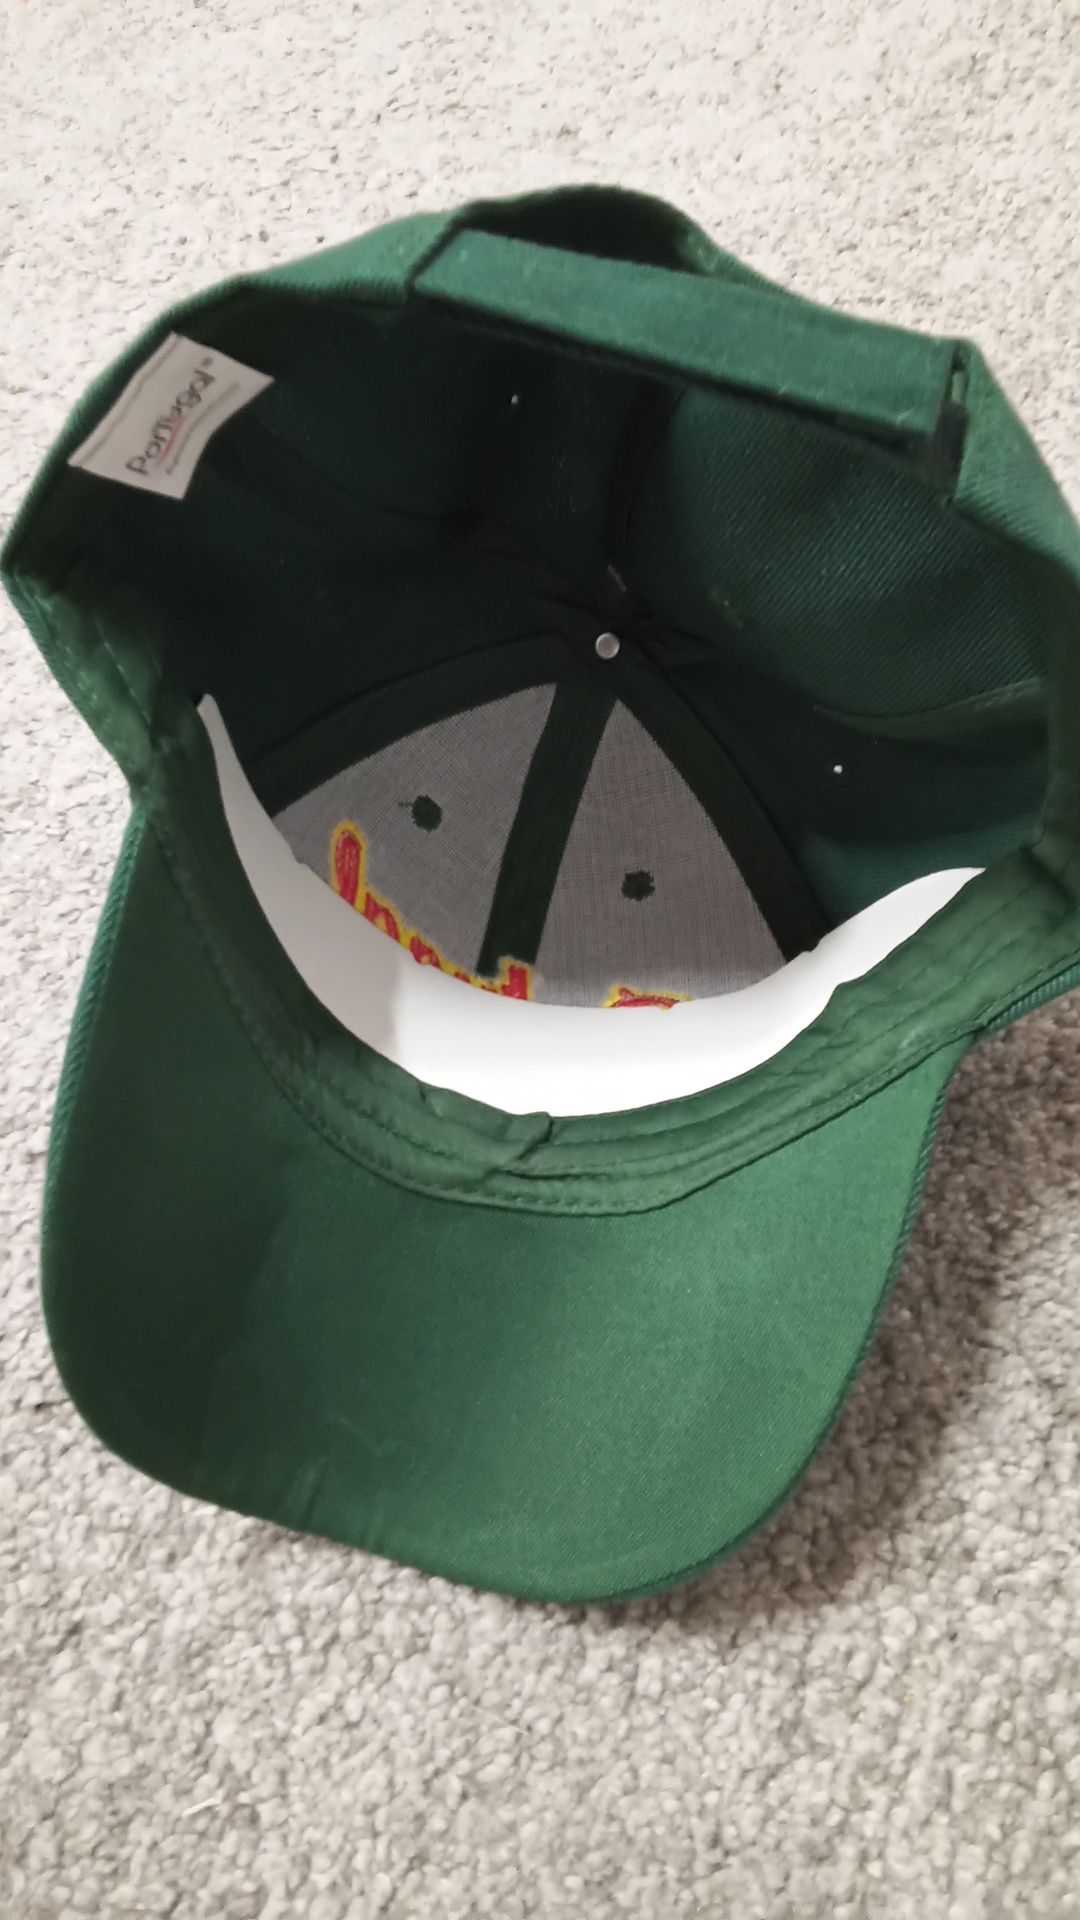 Zielona czapka Portugal